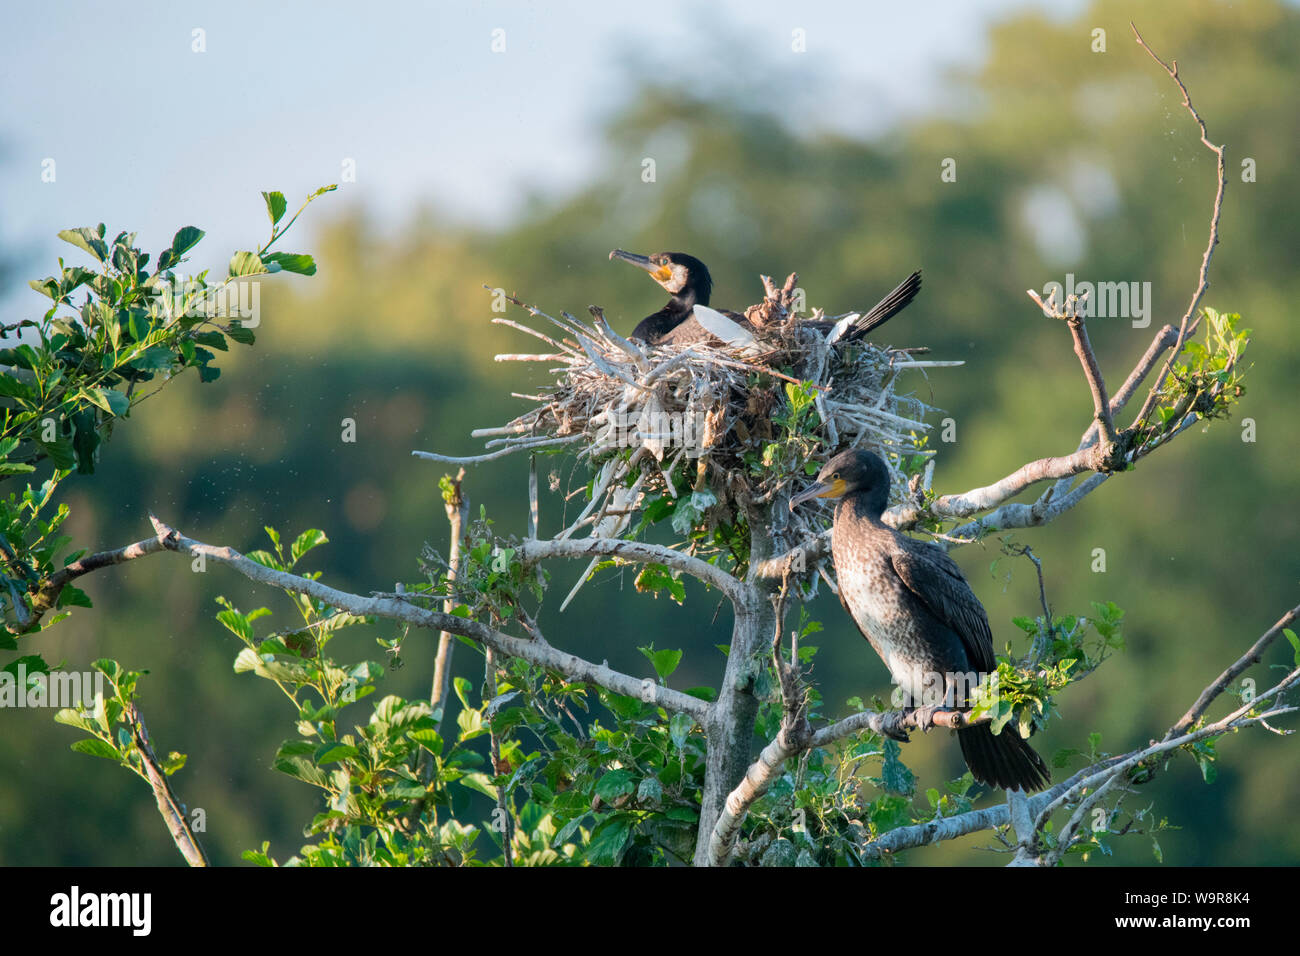 Grands cormorans, couple au nid dans la réserve naturelle, réserve d'oiseaux de la région salon Heisinger Bogen, Essen, Rhénanie du Nord-Westphalie, Europe, (Phalacrocorax carbo) Banque D'Images